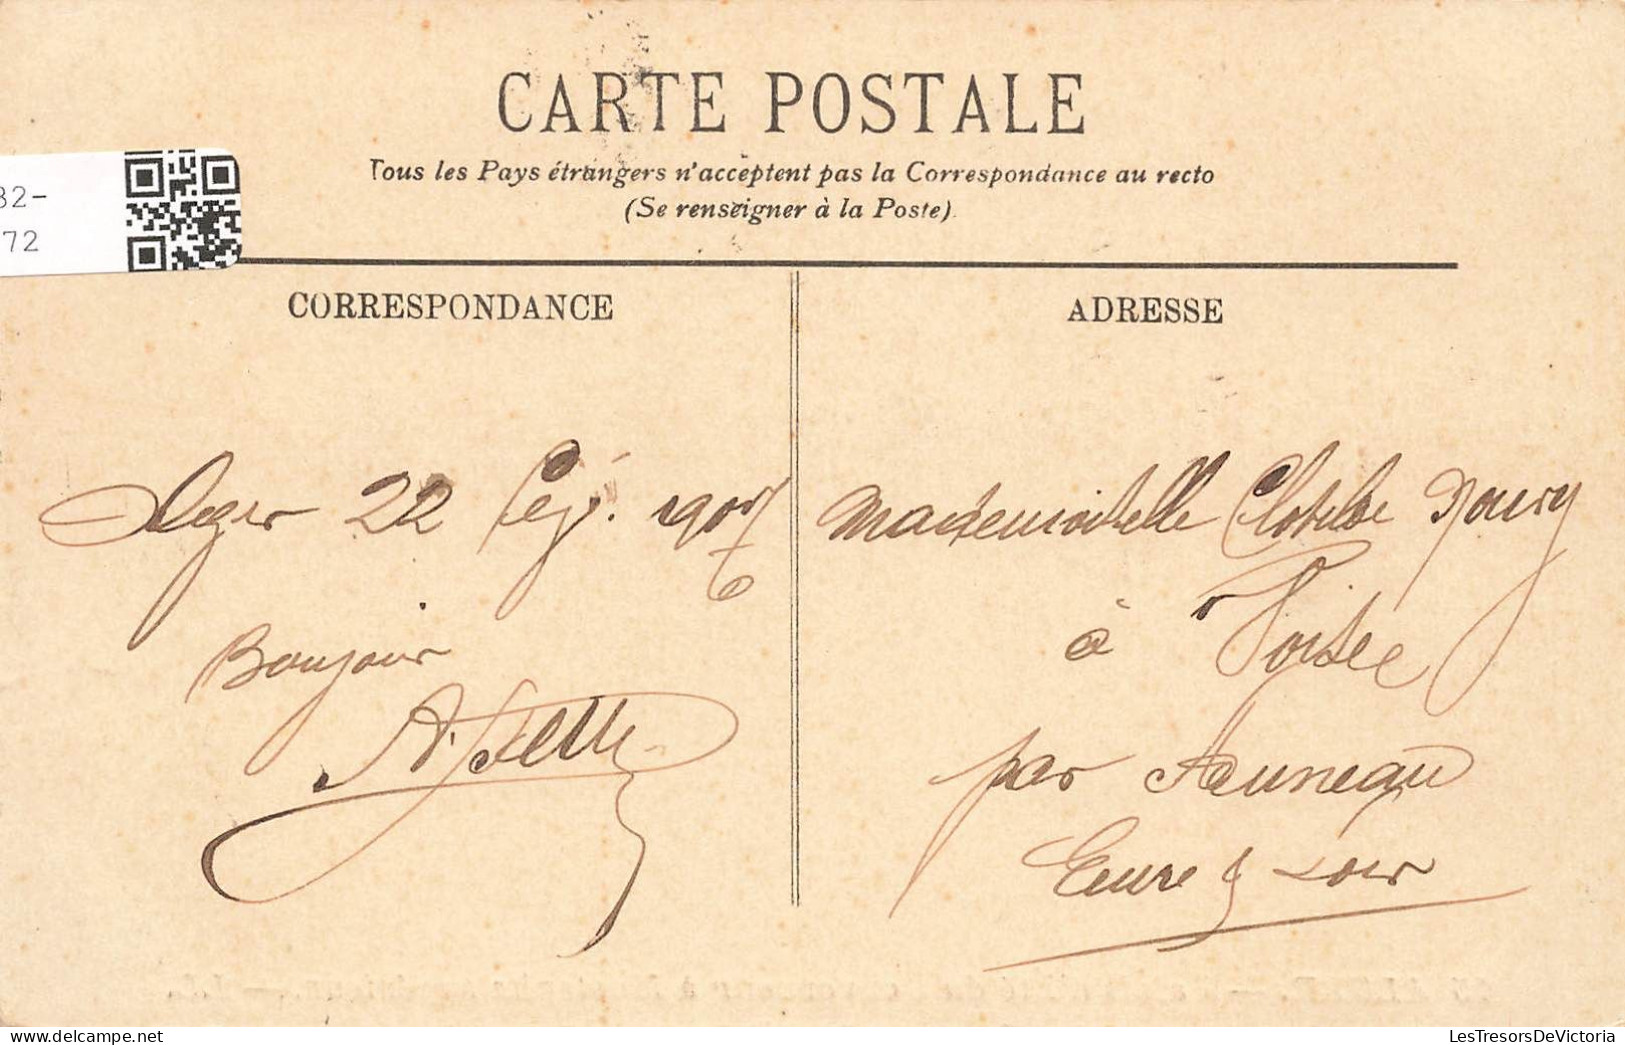 ALGERIE - Alger - Palais D'été Du Gouverneur à Mustapha - LL - Carte Postale Ancienne - Algiers